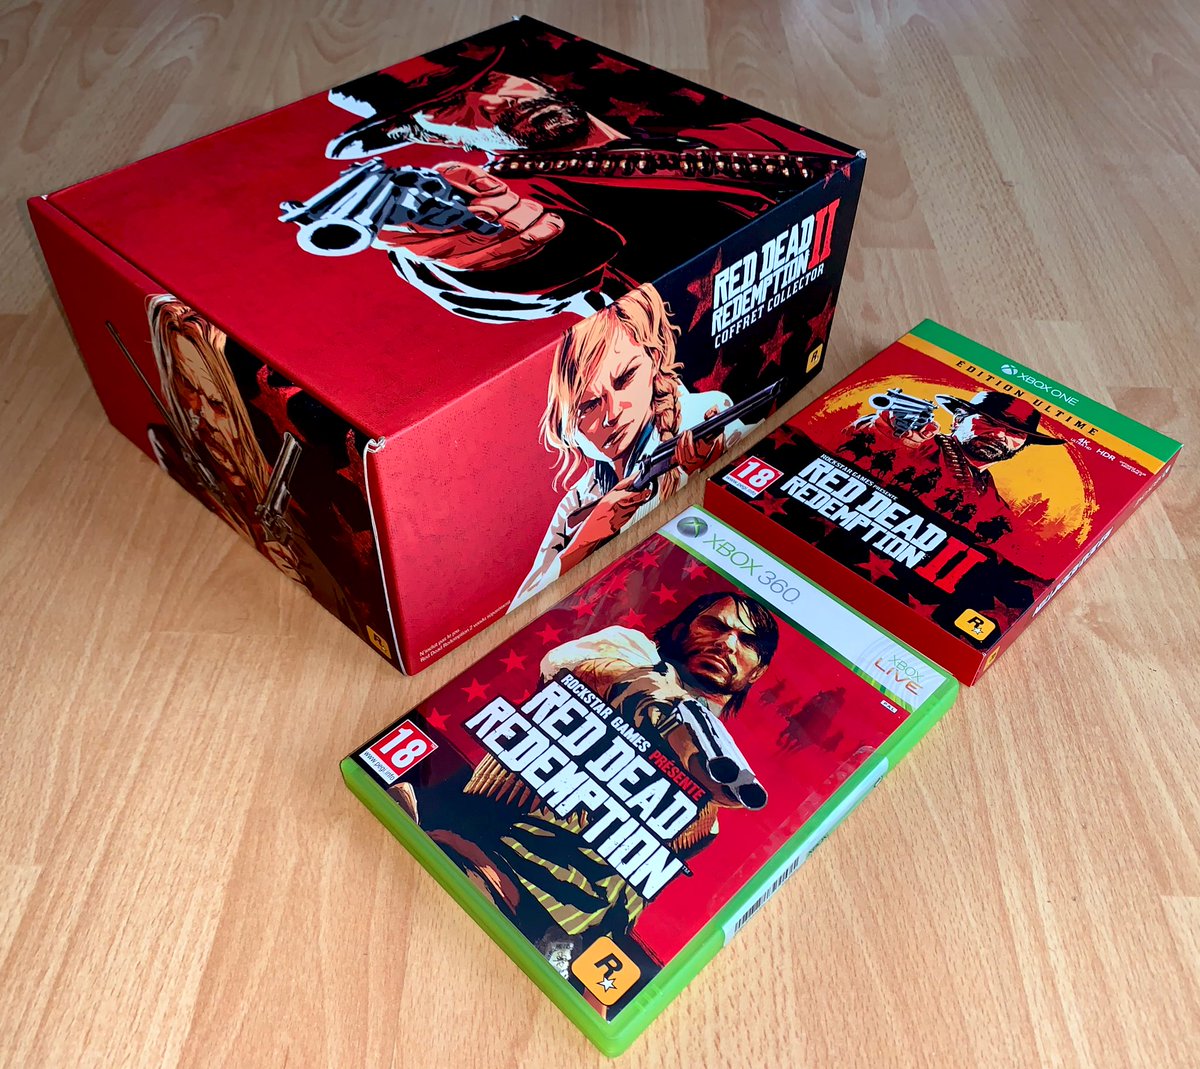 Red Dead Redemption II (Xbox One, 2018) La meilleure version consoles (en vraie 4K HDR) dans son édition "ultime" accompagnée du coffret de goodies, très sympa et complet, pour un vrai collector d’ensemble.En bonus, RDR1 sur 360, là aussi en "superior" (surtout sur One X) !